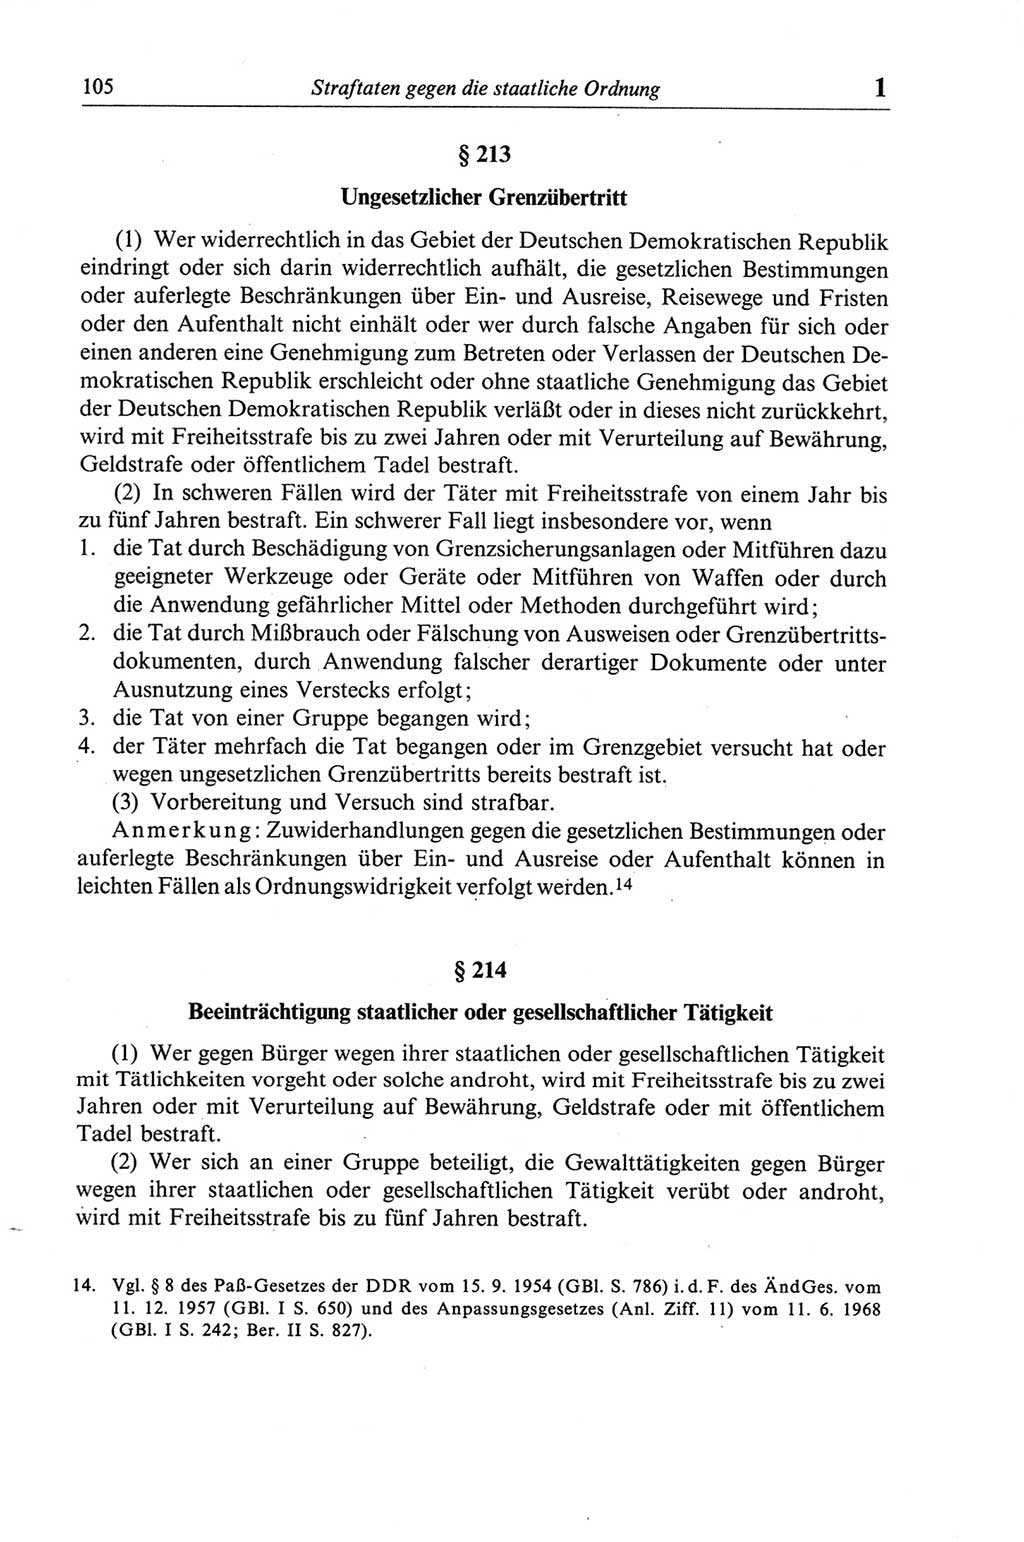 Strafgesetzbuch (StGB) der Deutschen Demokratischen Republik (DDR) und angrenzende Gesetze und Bestimmungen 1968, Seite 105 (StGB Ges. Best. DDR 1968, S. 105)